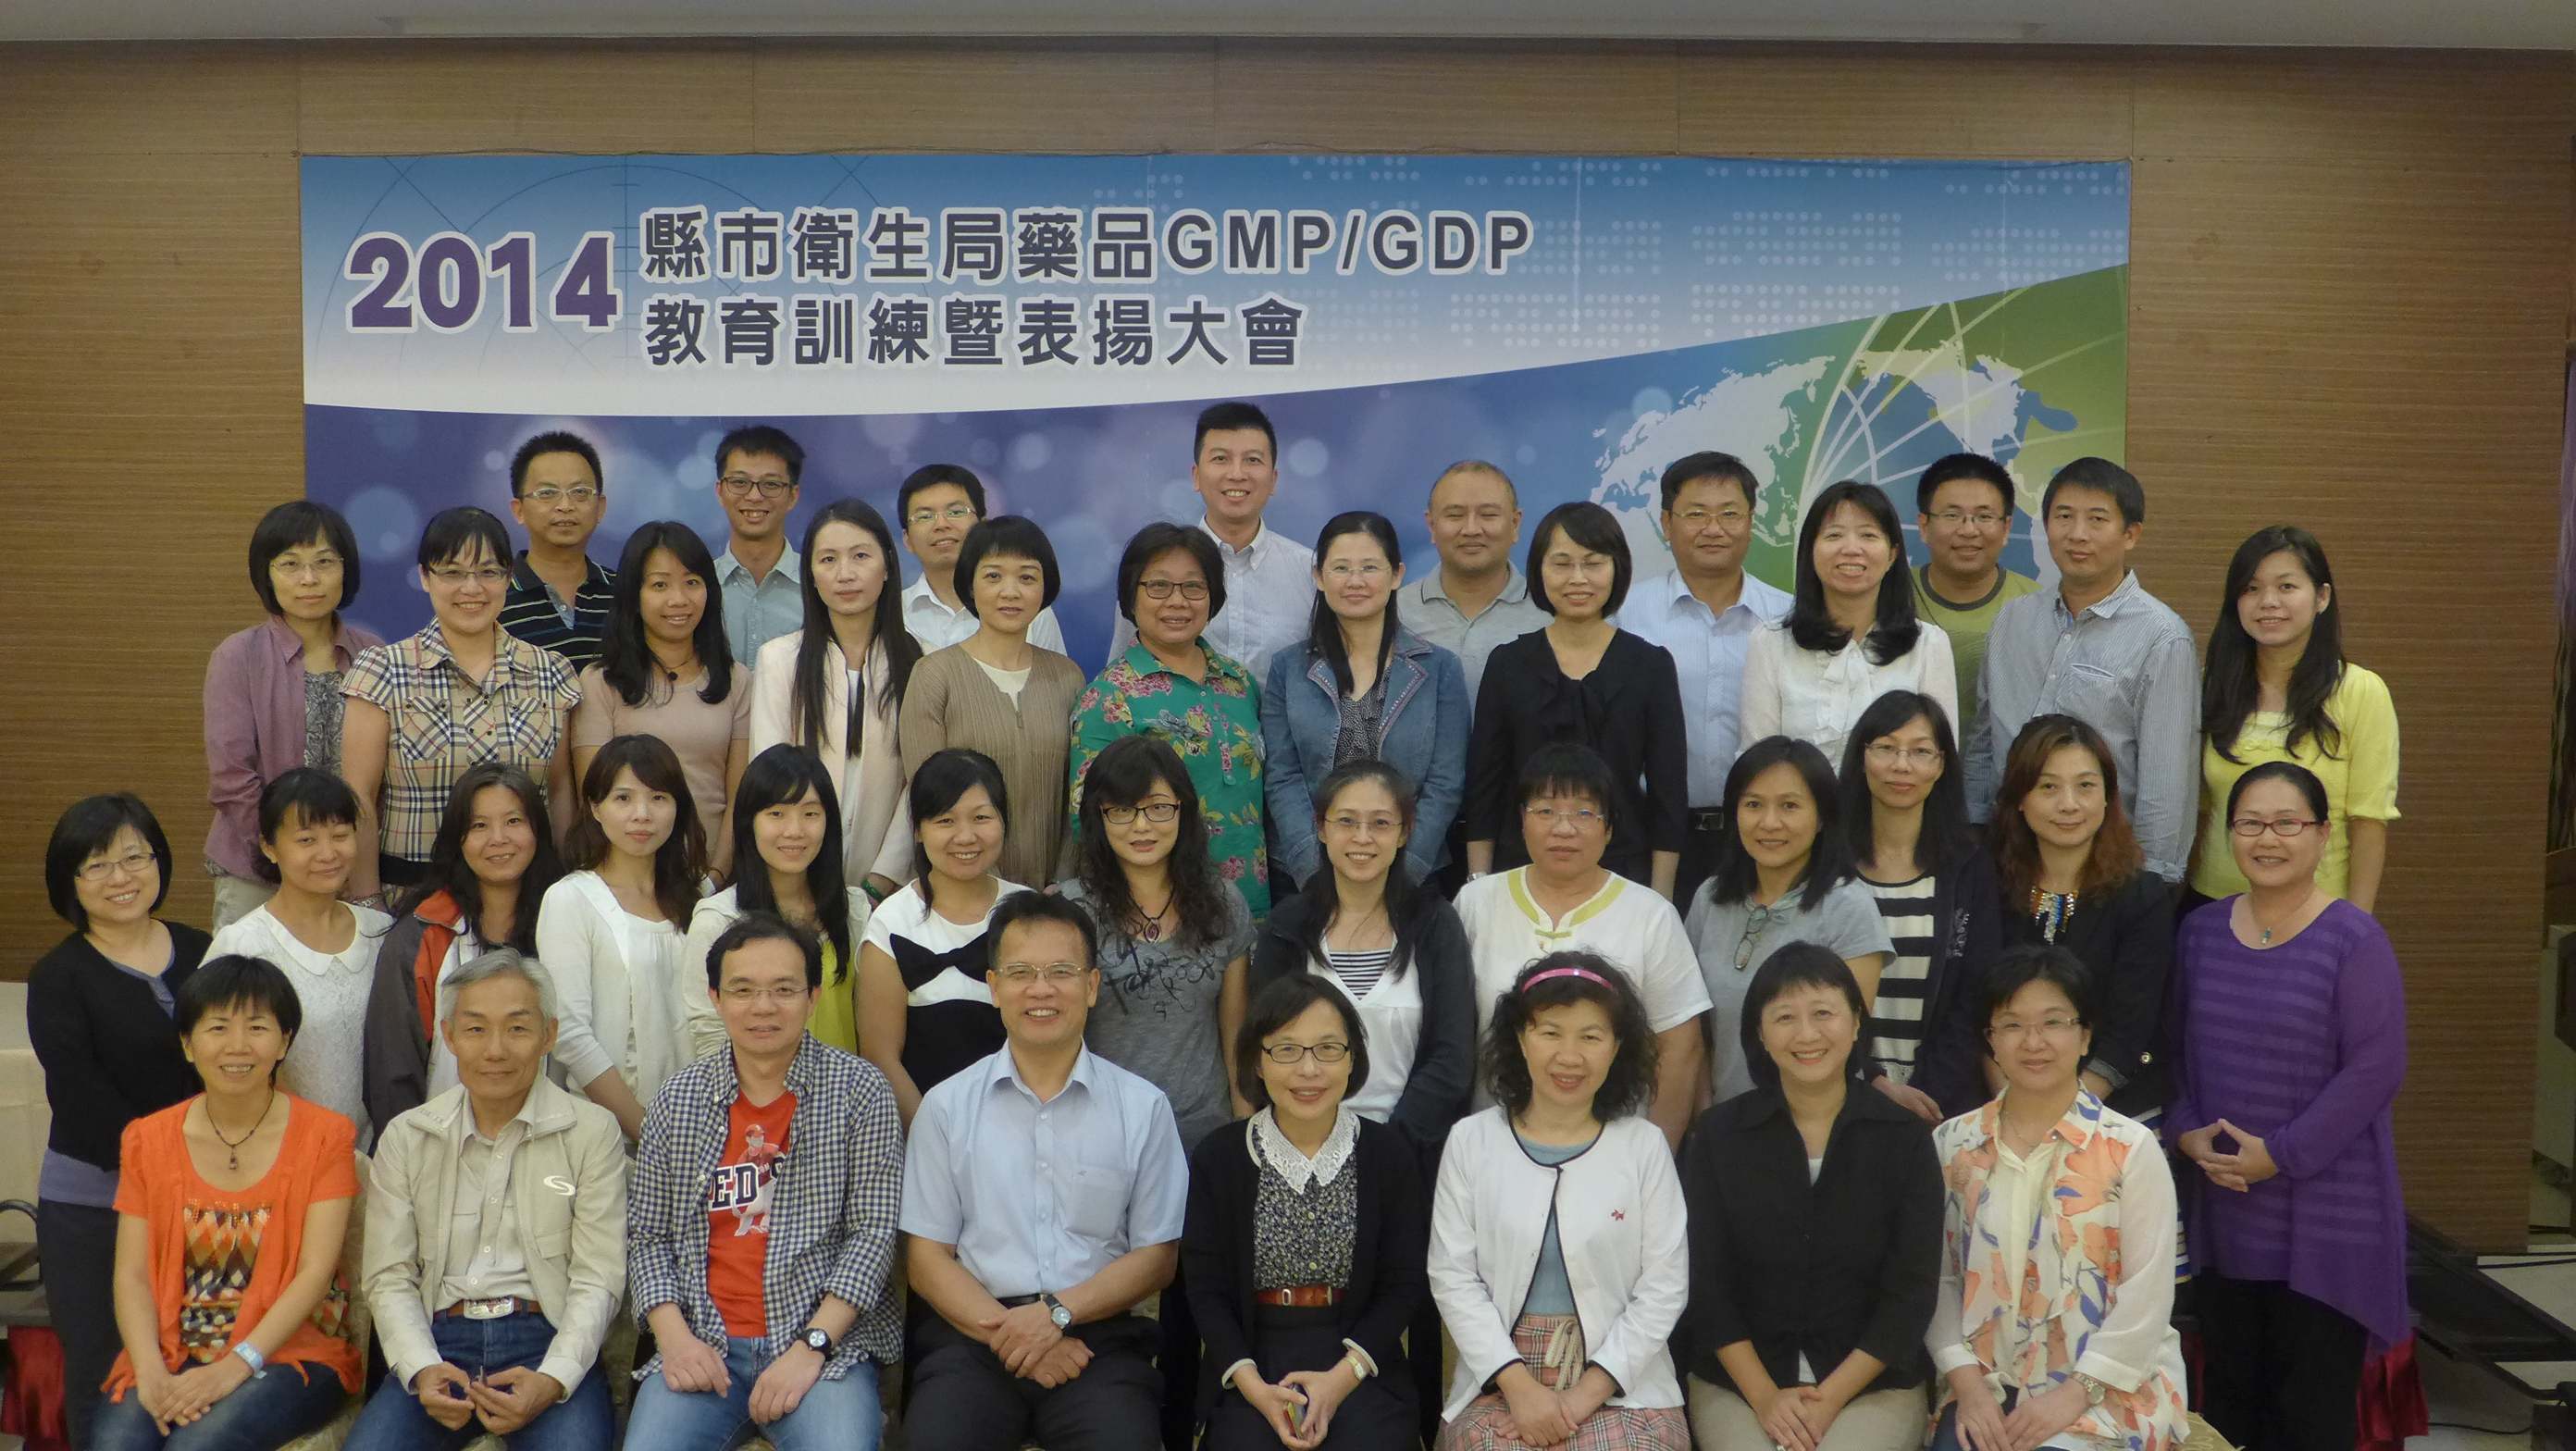 2014年縣市衛生局藥品GMP/GDP教育訓練暨表揚大會-大合照